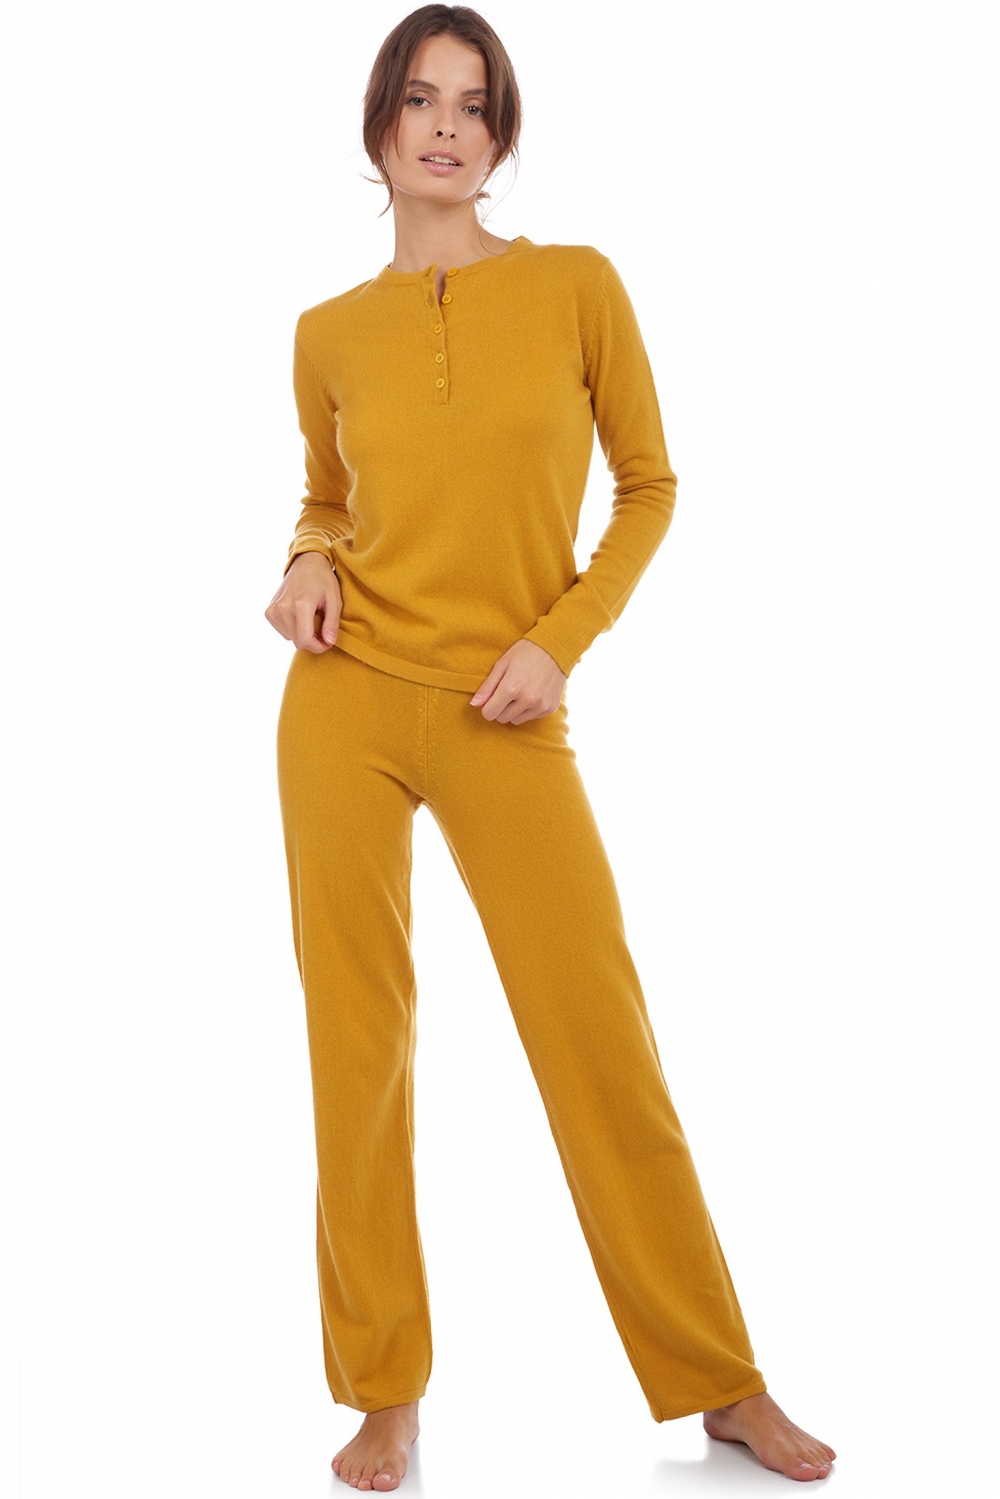 Cachemire pyjama femme loan moutarde xl